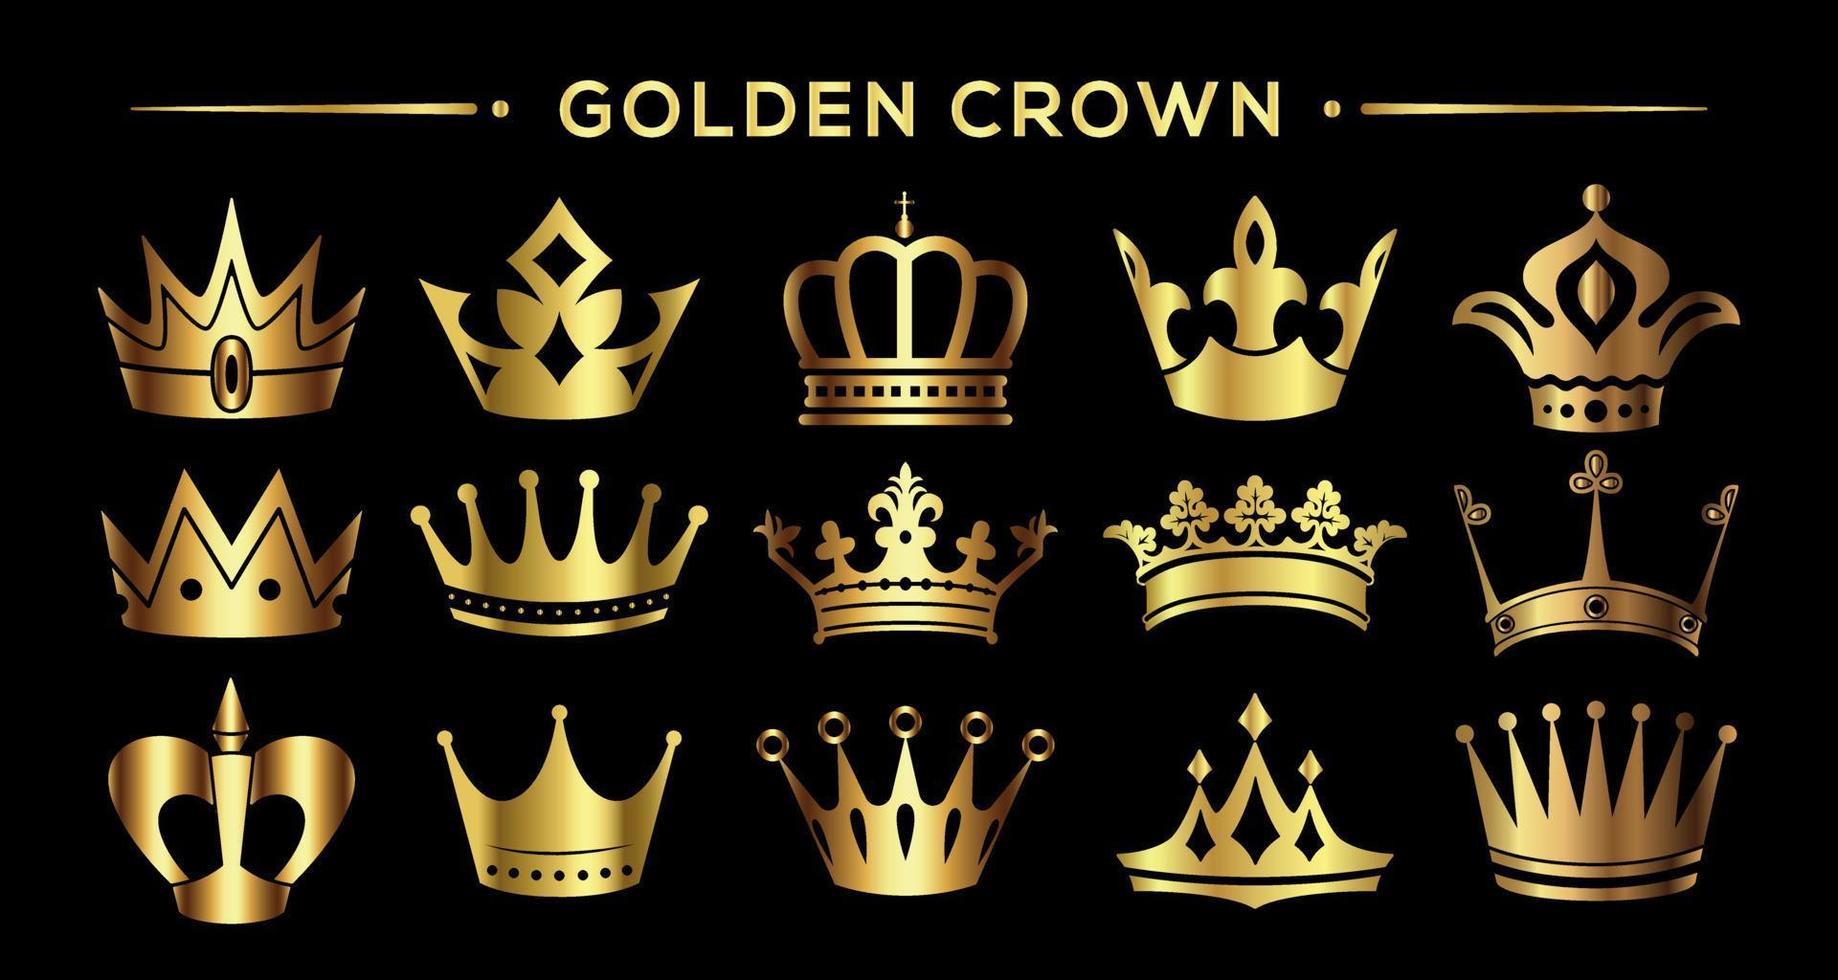 Royal  golden crown  on black background, stock vector illustration